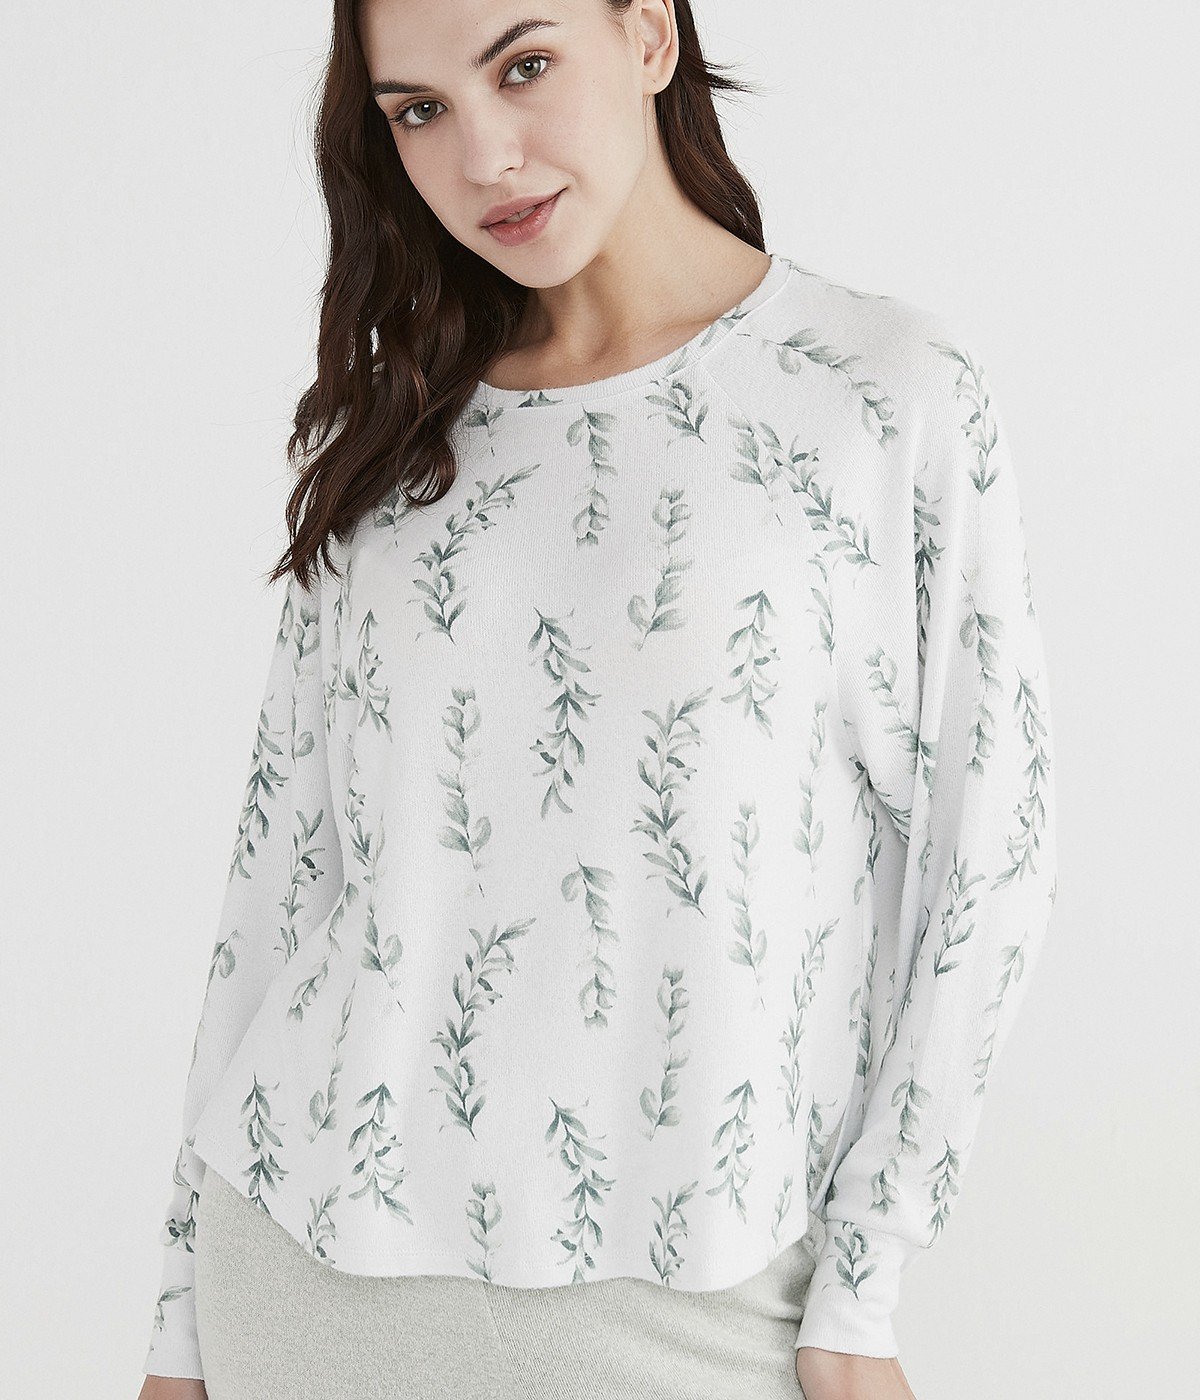 Sweatshirt Mint Flowers